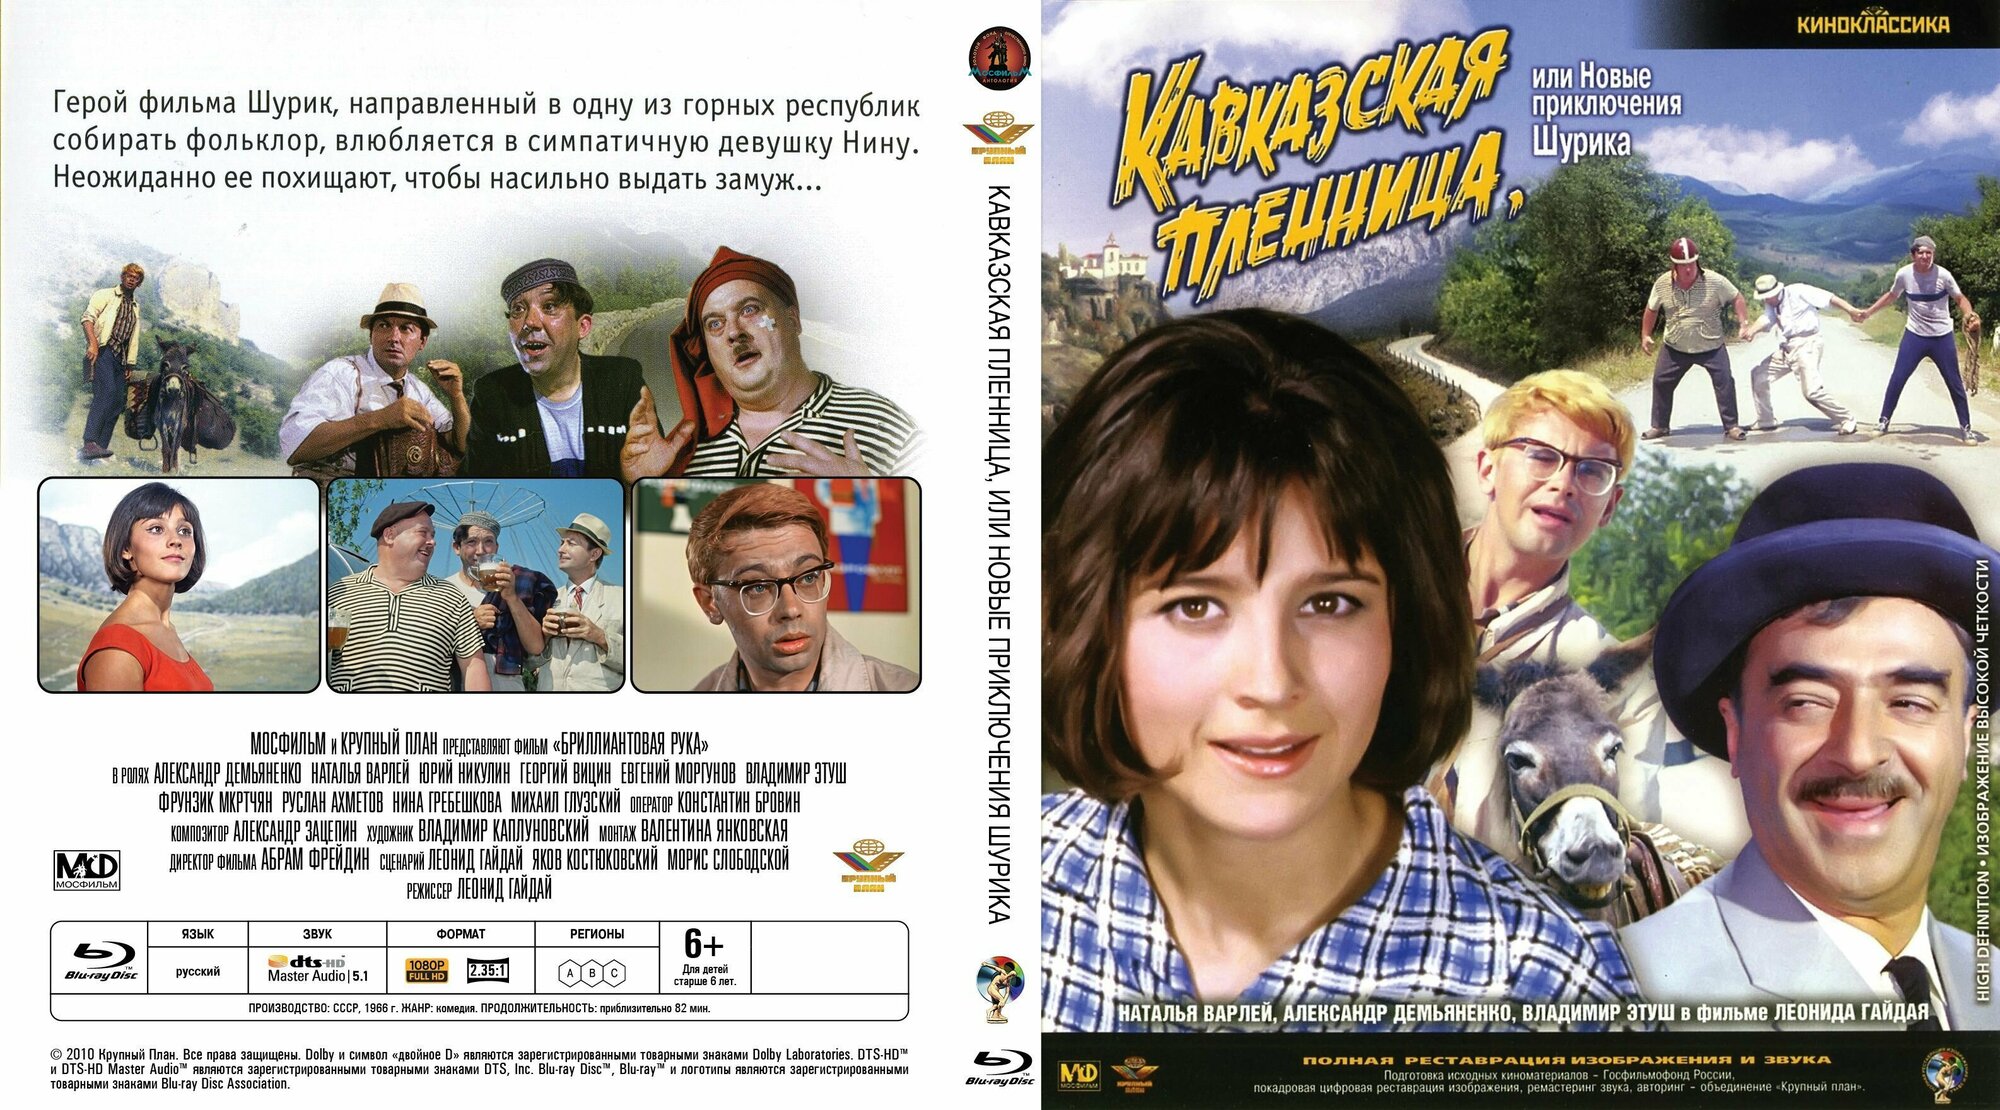 Советский фильм "Кавказская пленница, или Новые приключения Шурика" 1966г. (DVD)